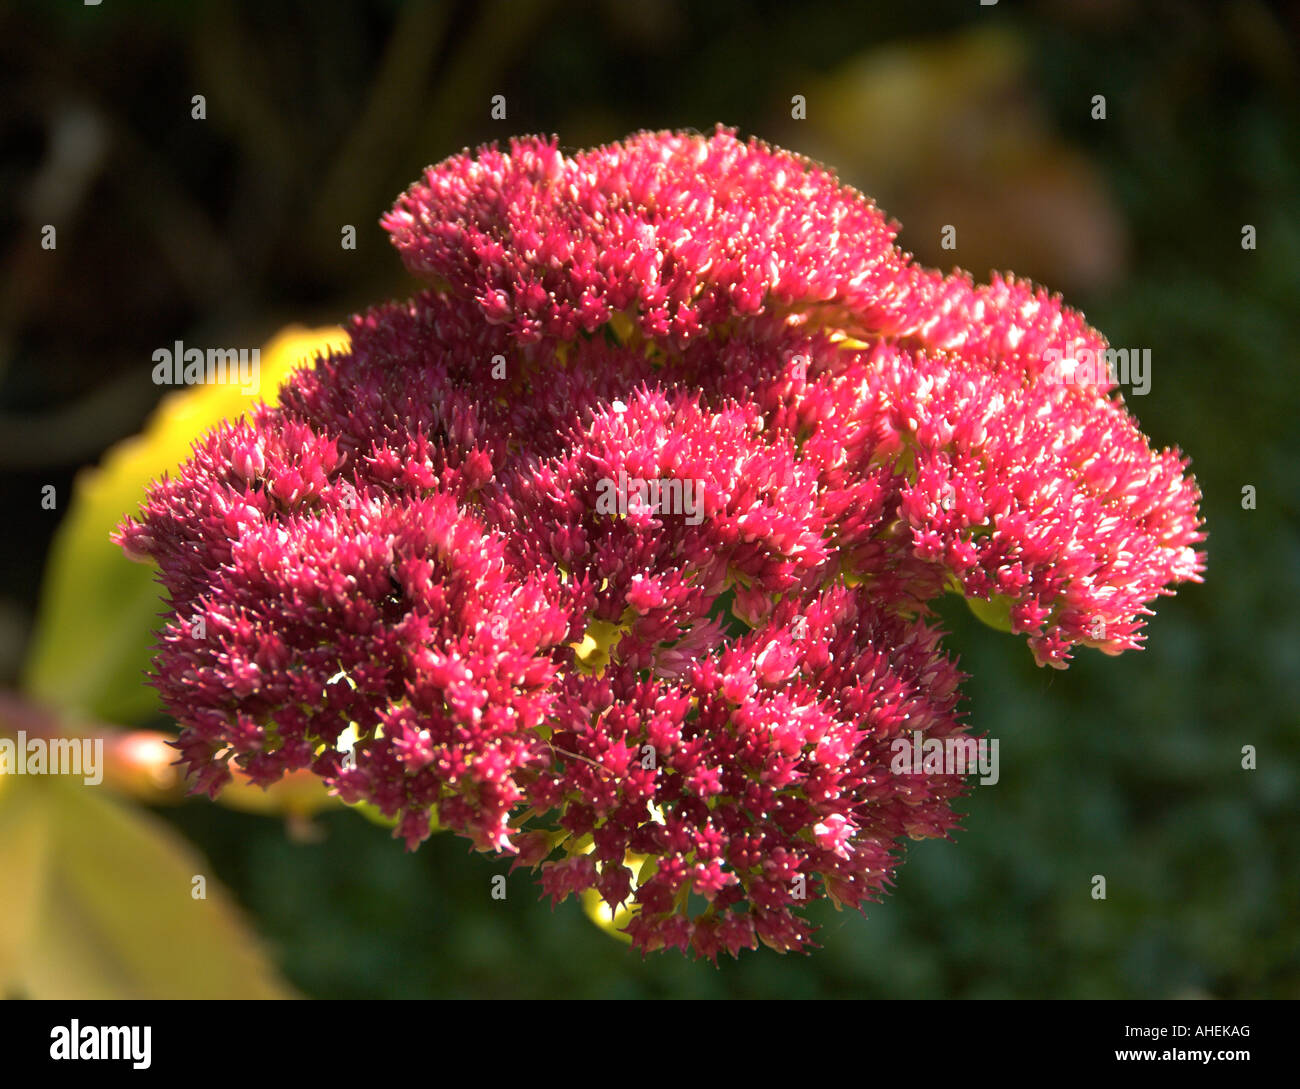 Sedum autumn joy hi-res stock photography and images - Alamy